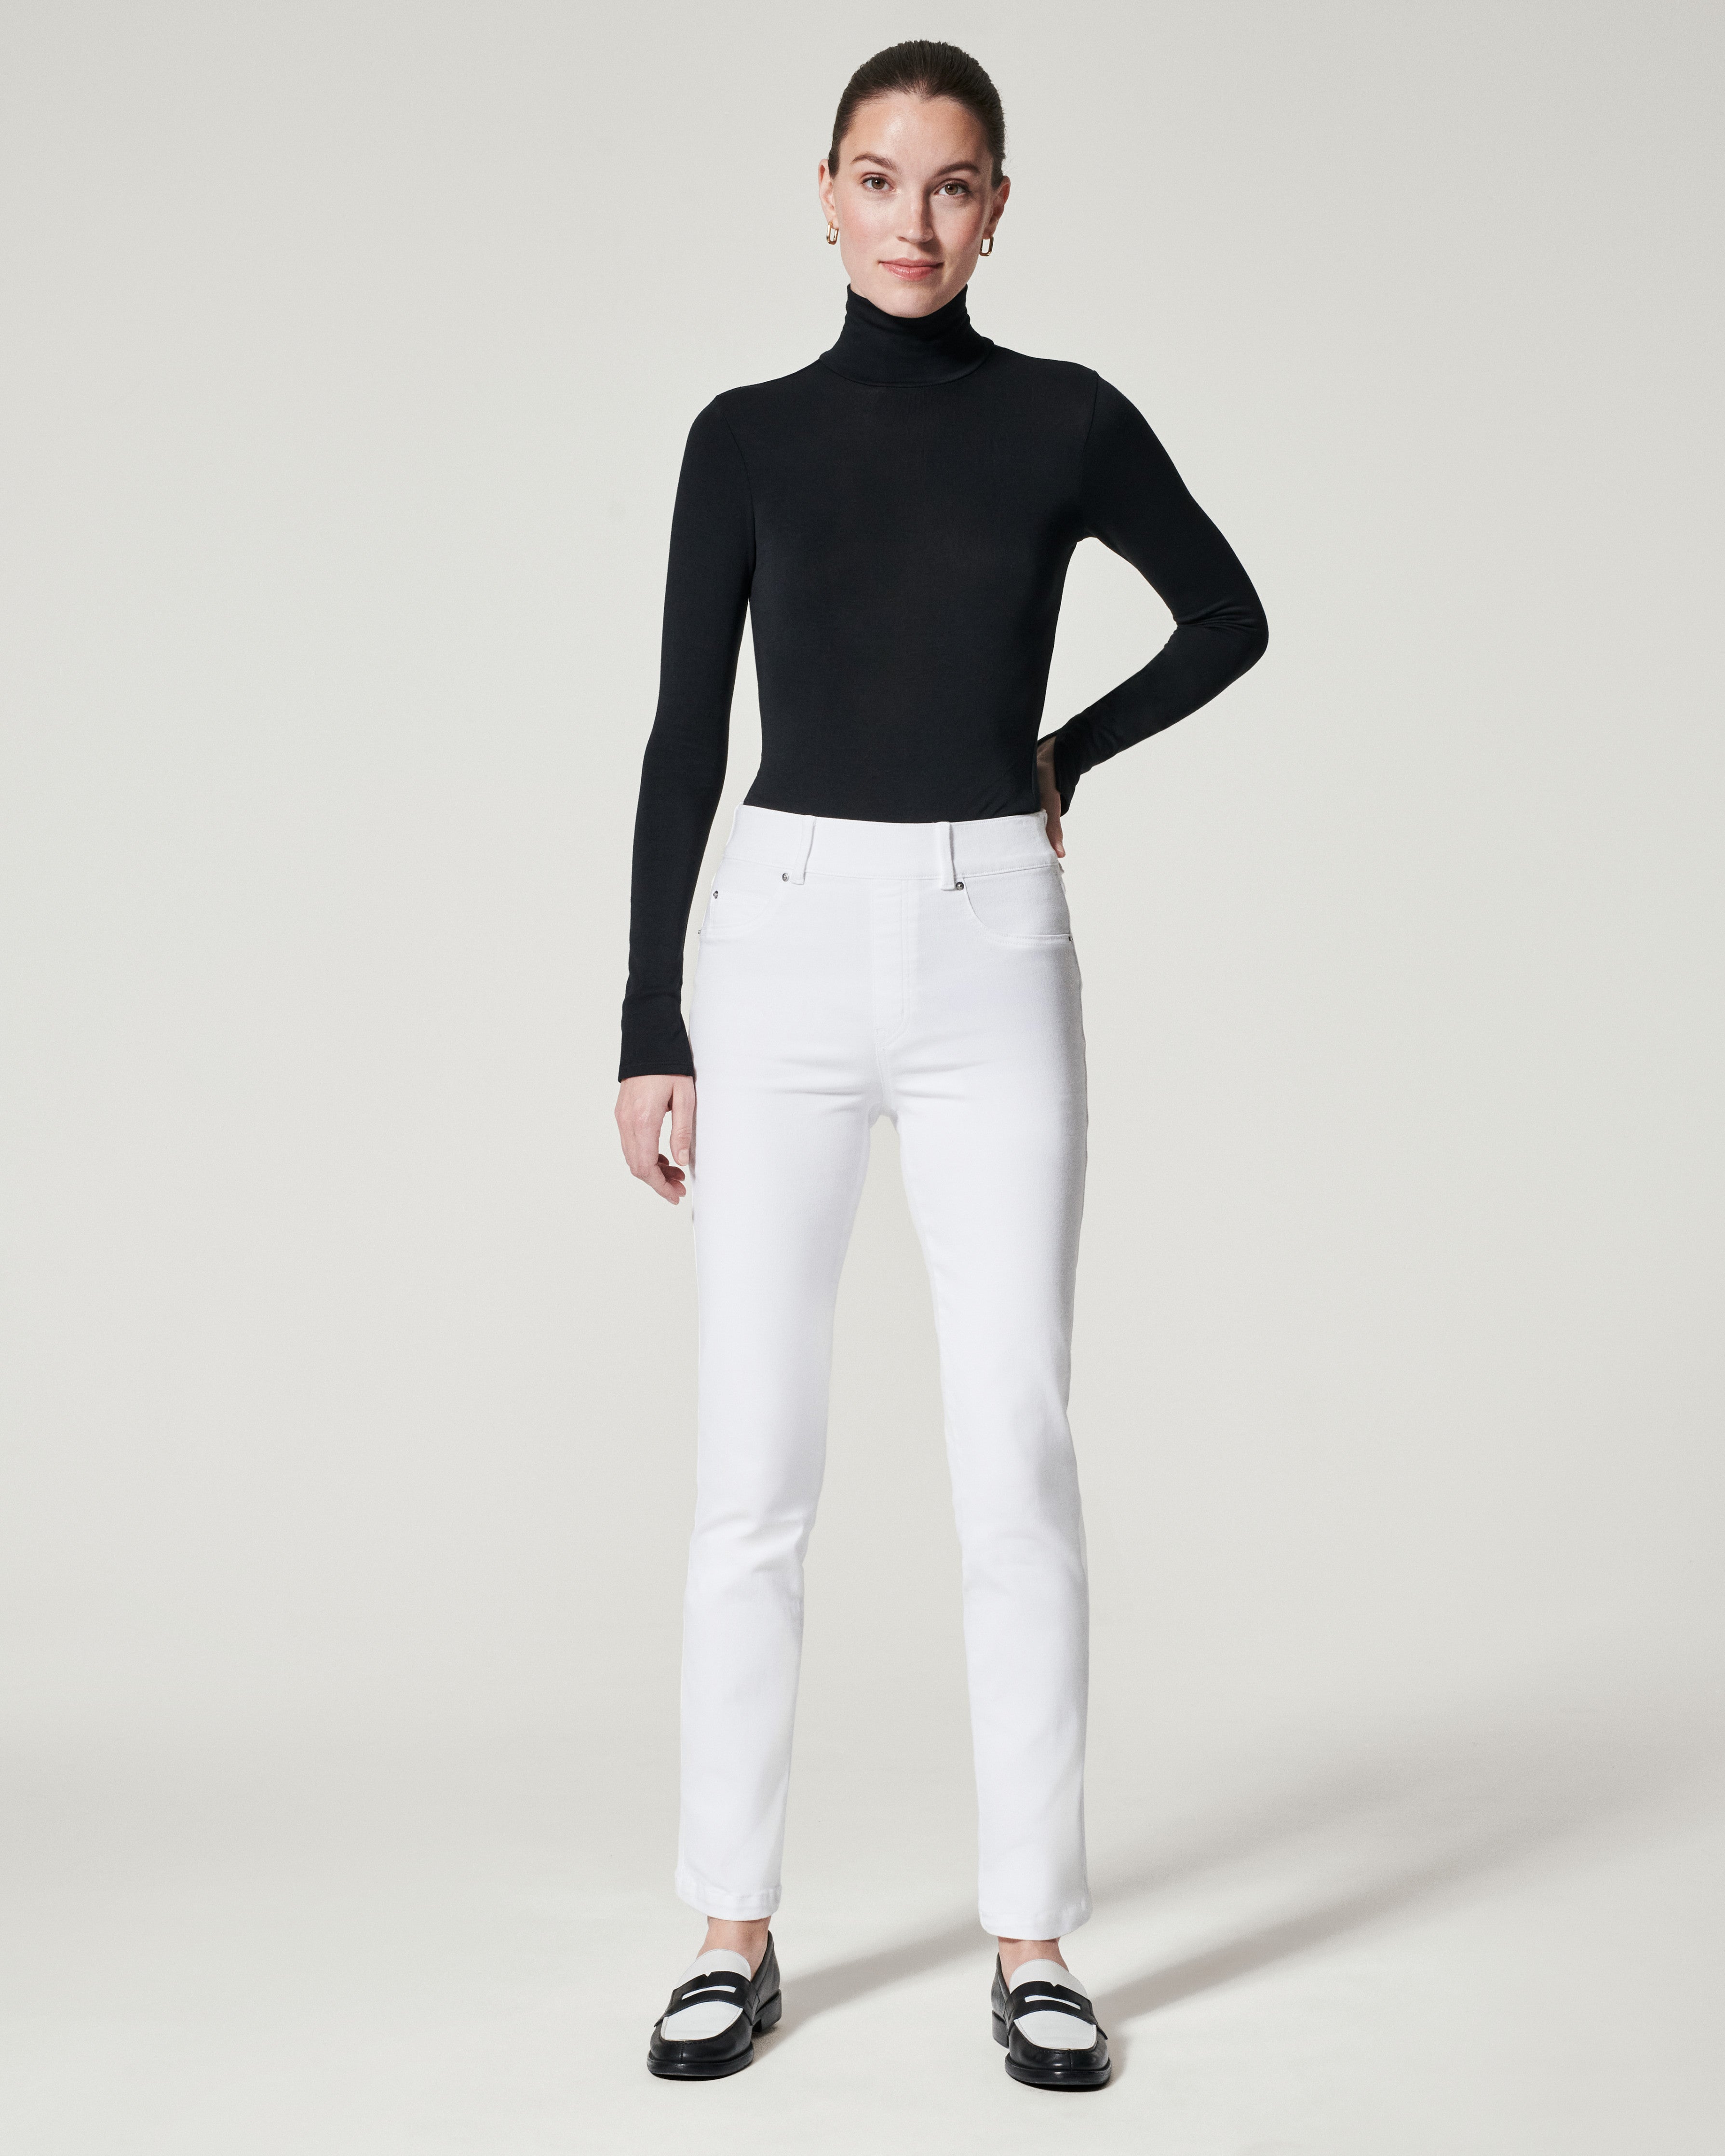 SPANX Skinny Jean-White – The South Apparel